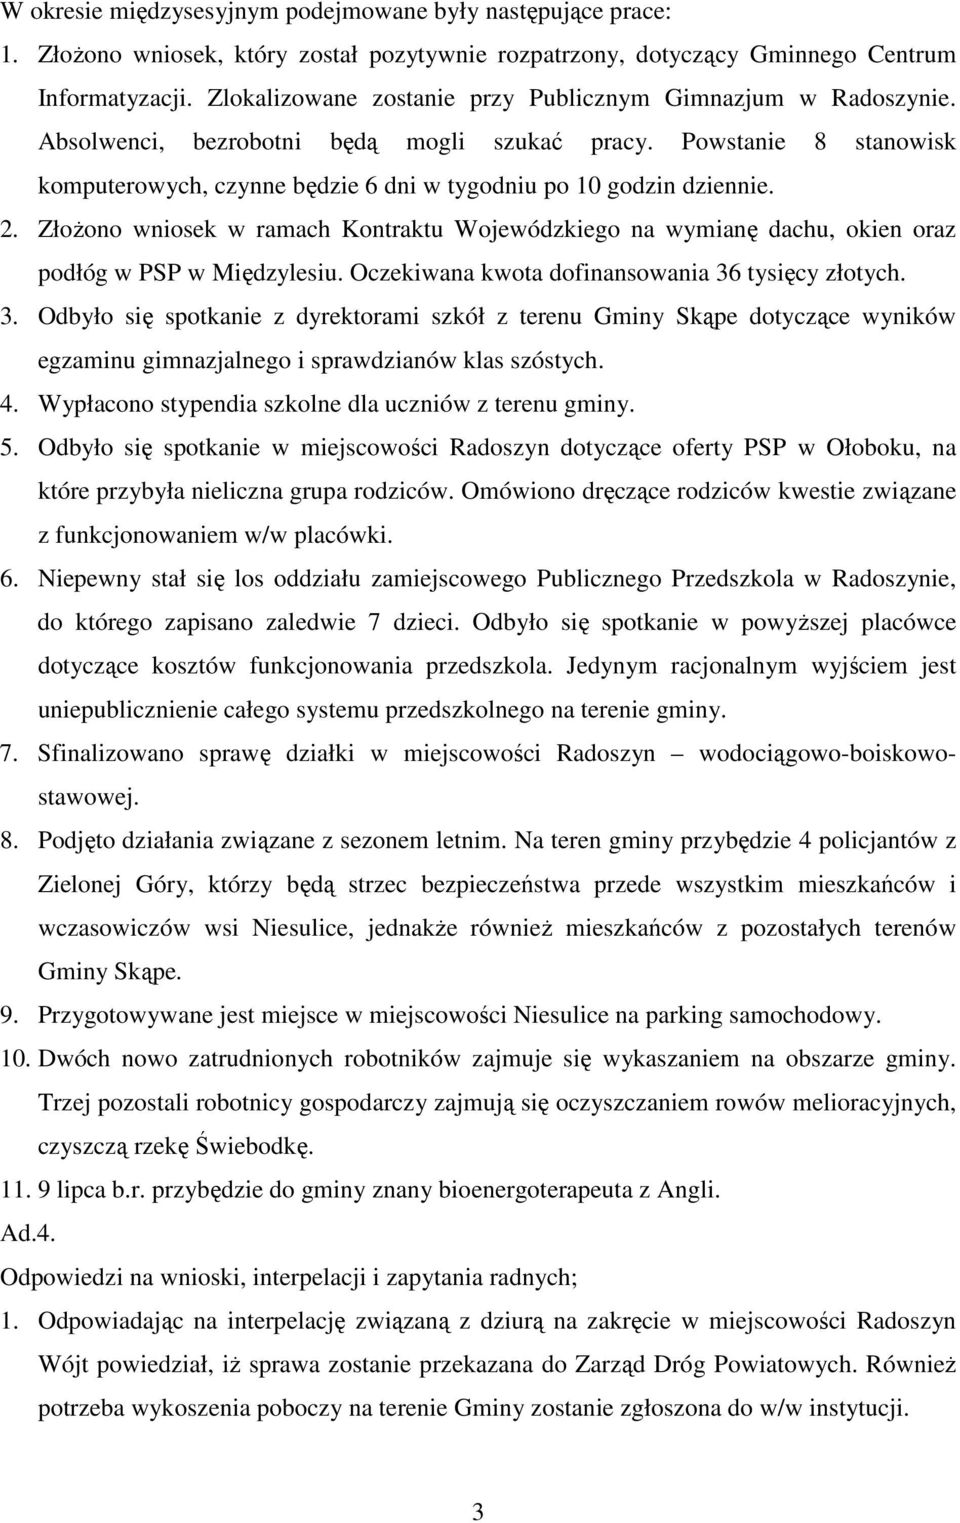 Powstanie 8 stanowisk komputerowych, czynne będzie 6 dni w tygodniu po 10 godzin dziennie. 2. ZłoŜono wniosek w ramach Kontraktu Wojewódzkiego na wymianę dachu, okien oraz podłóg w PSP w Międzylesiu.